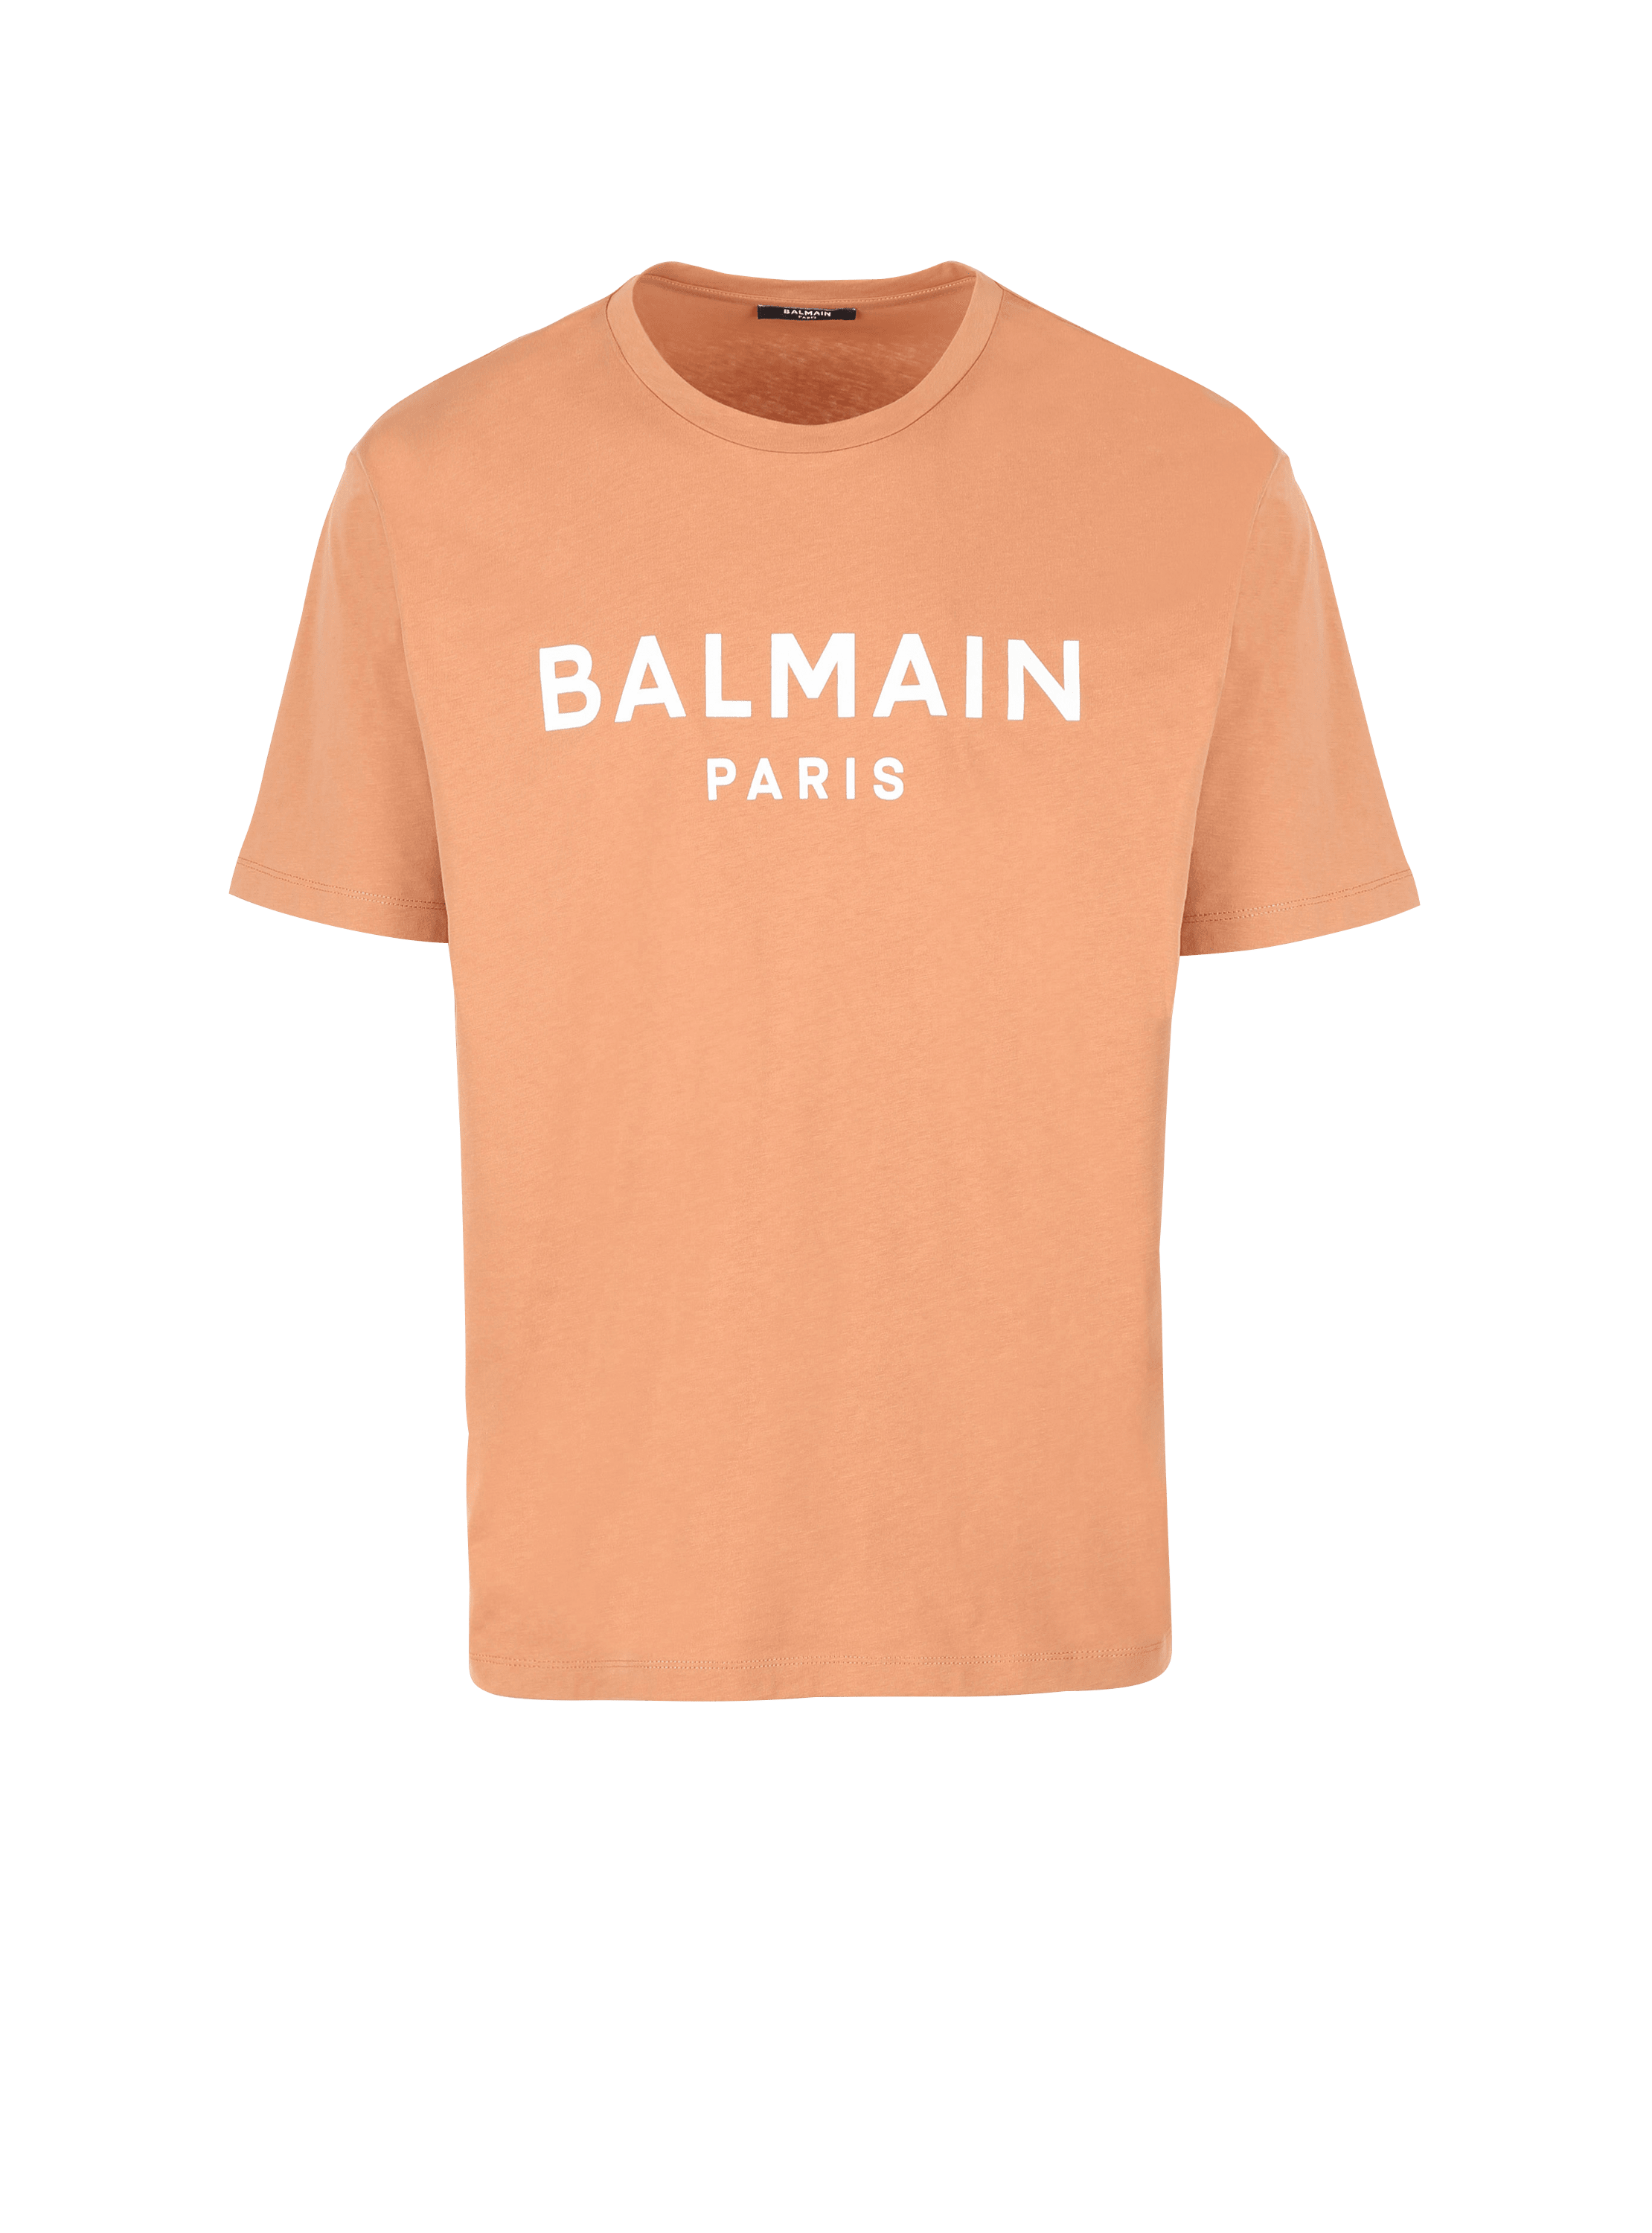 Camiseta con logotipo de Balmain estampado